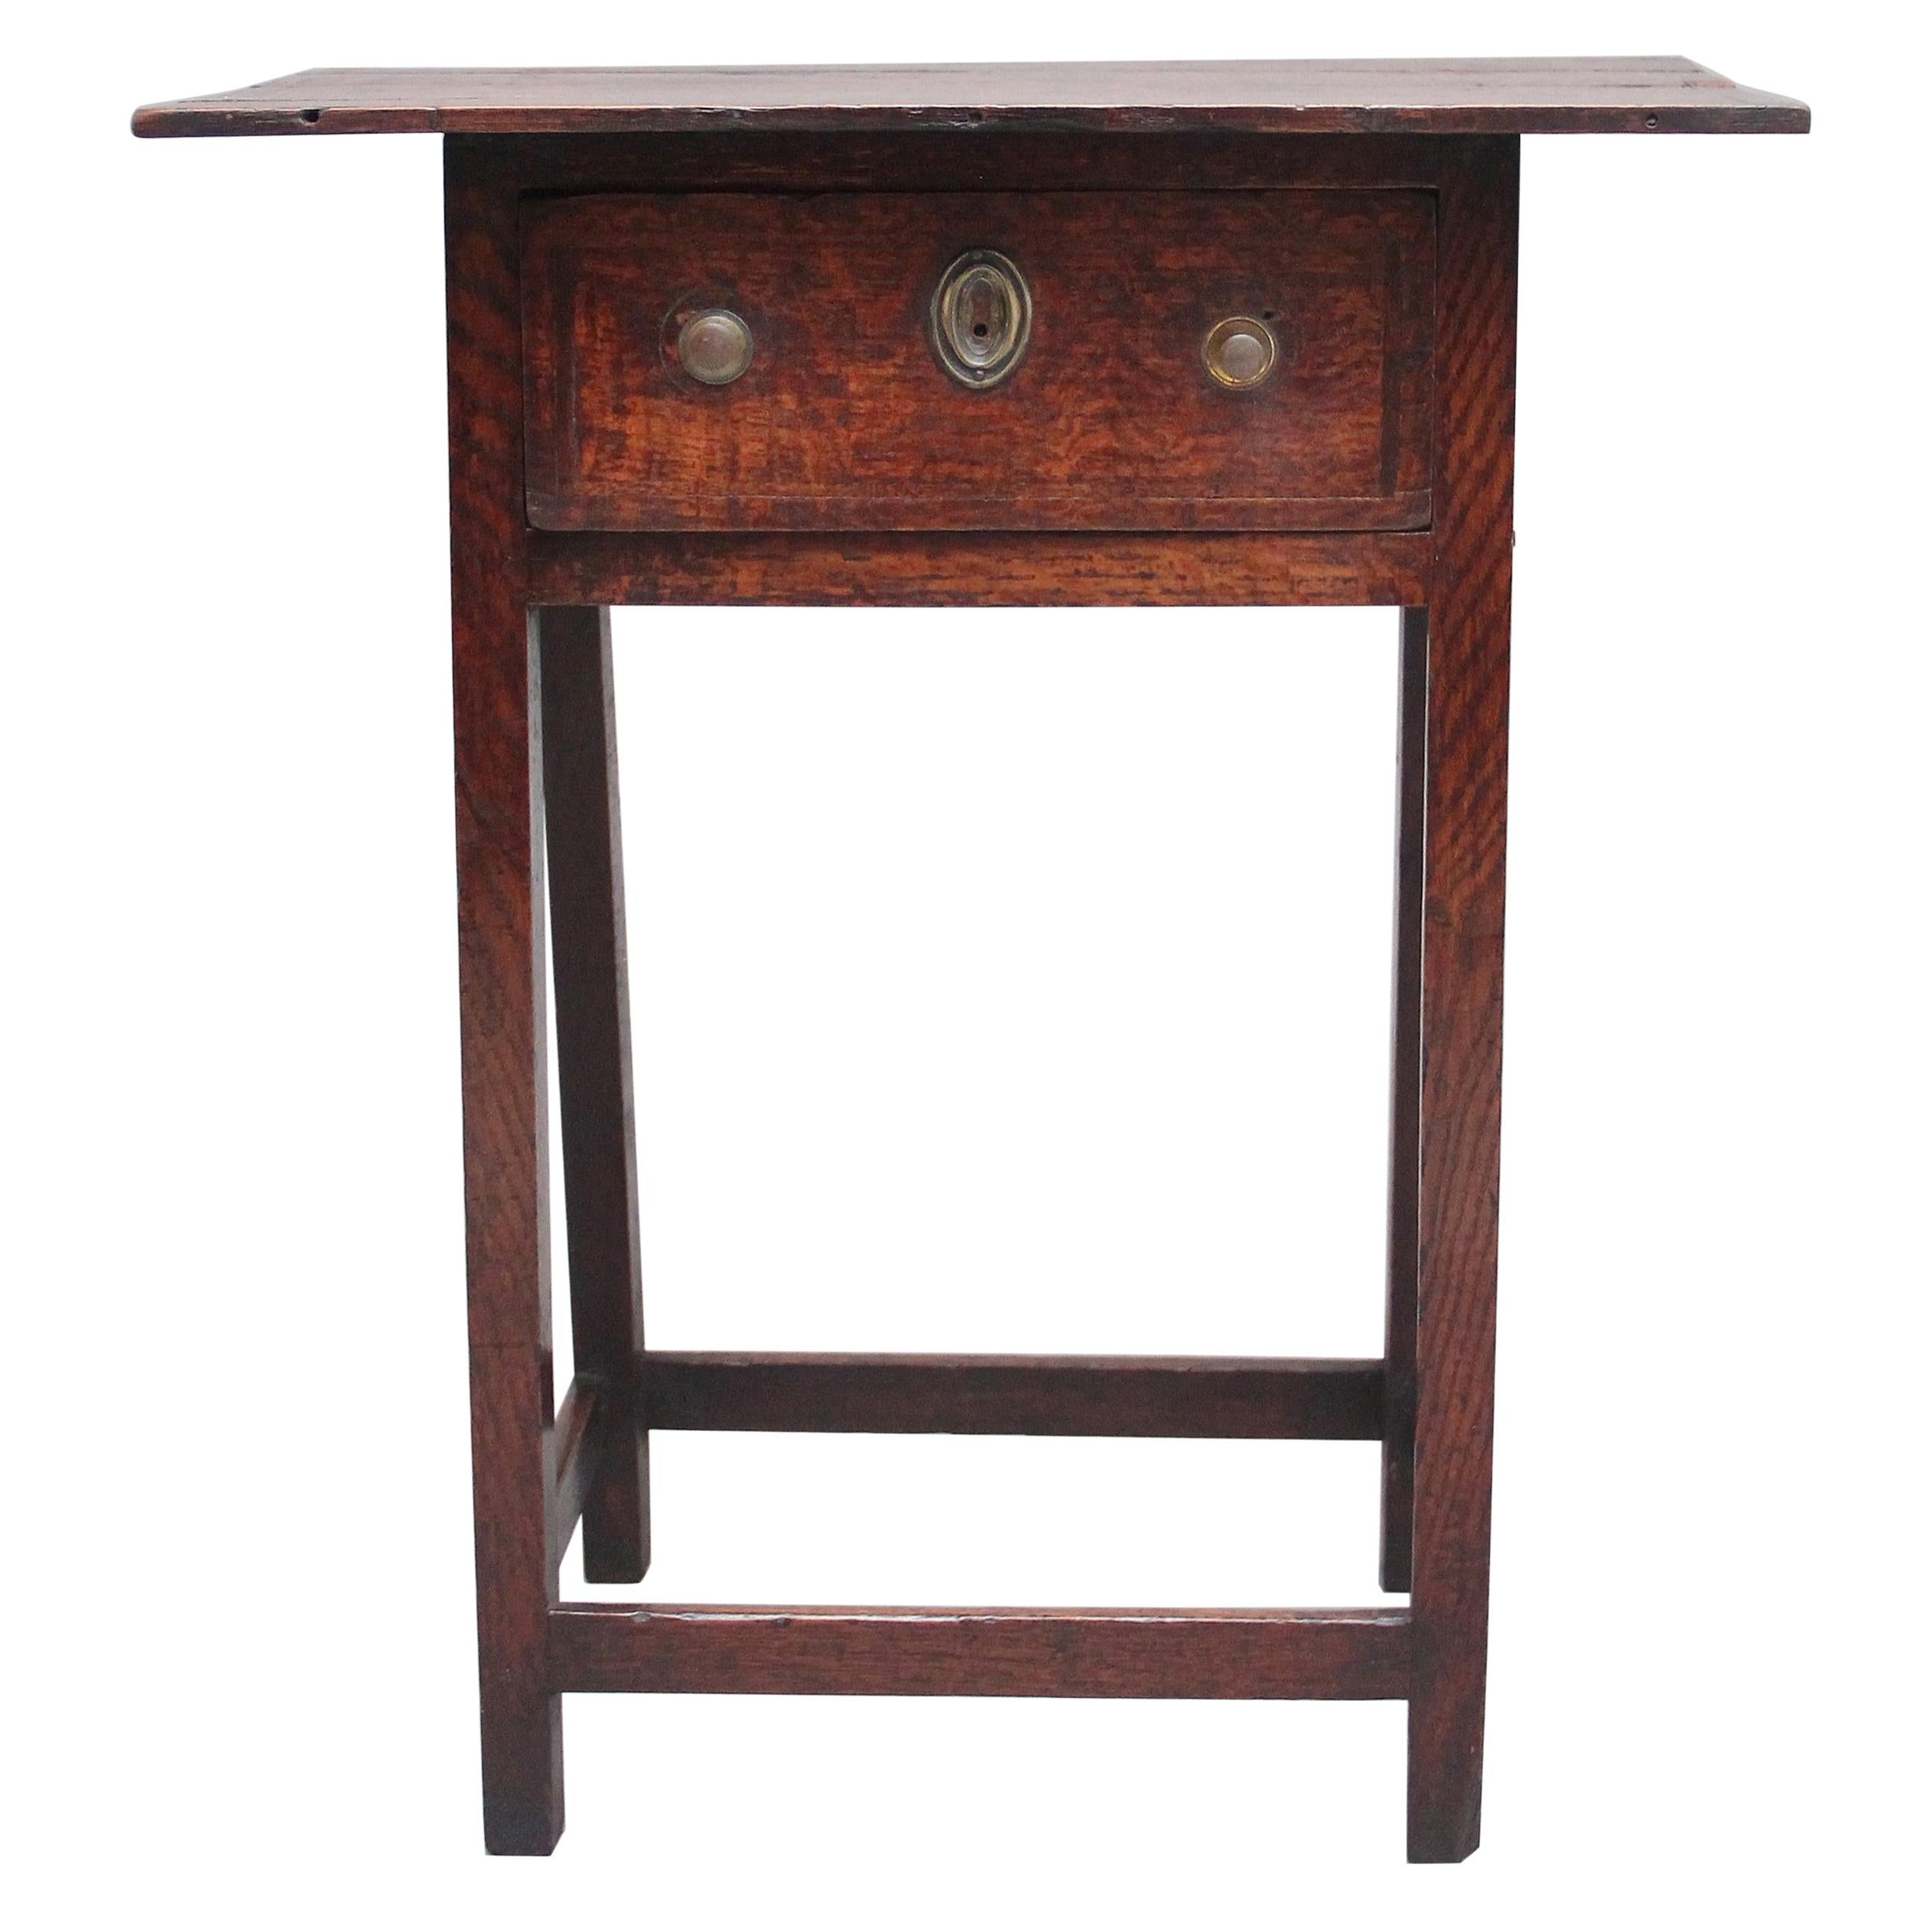 Early 19th Century Oak Side Table